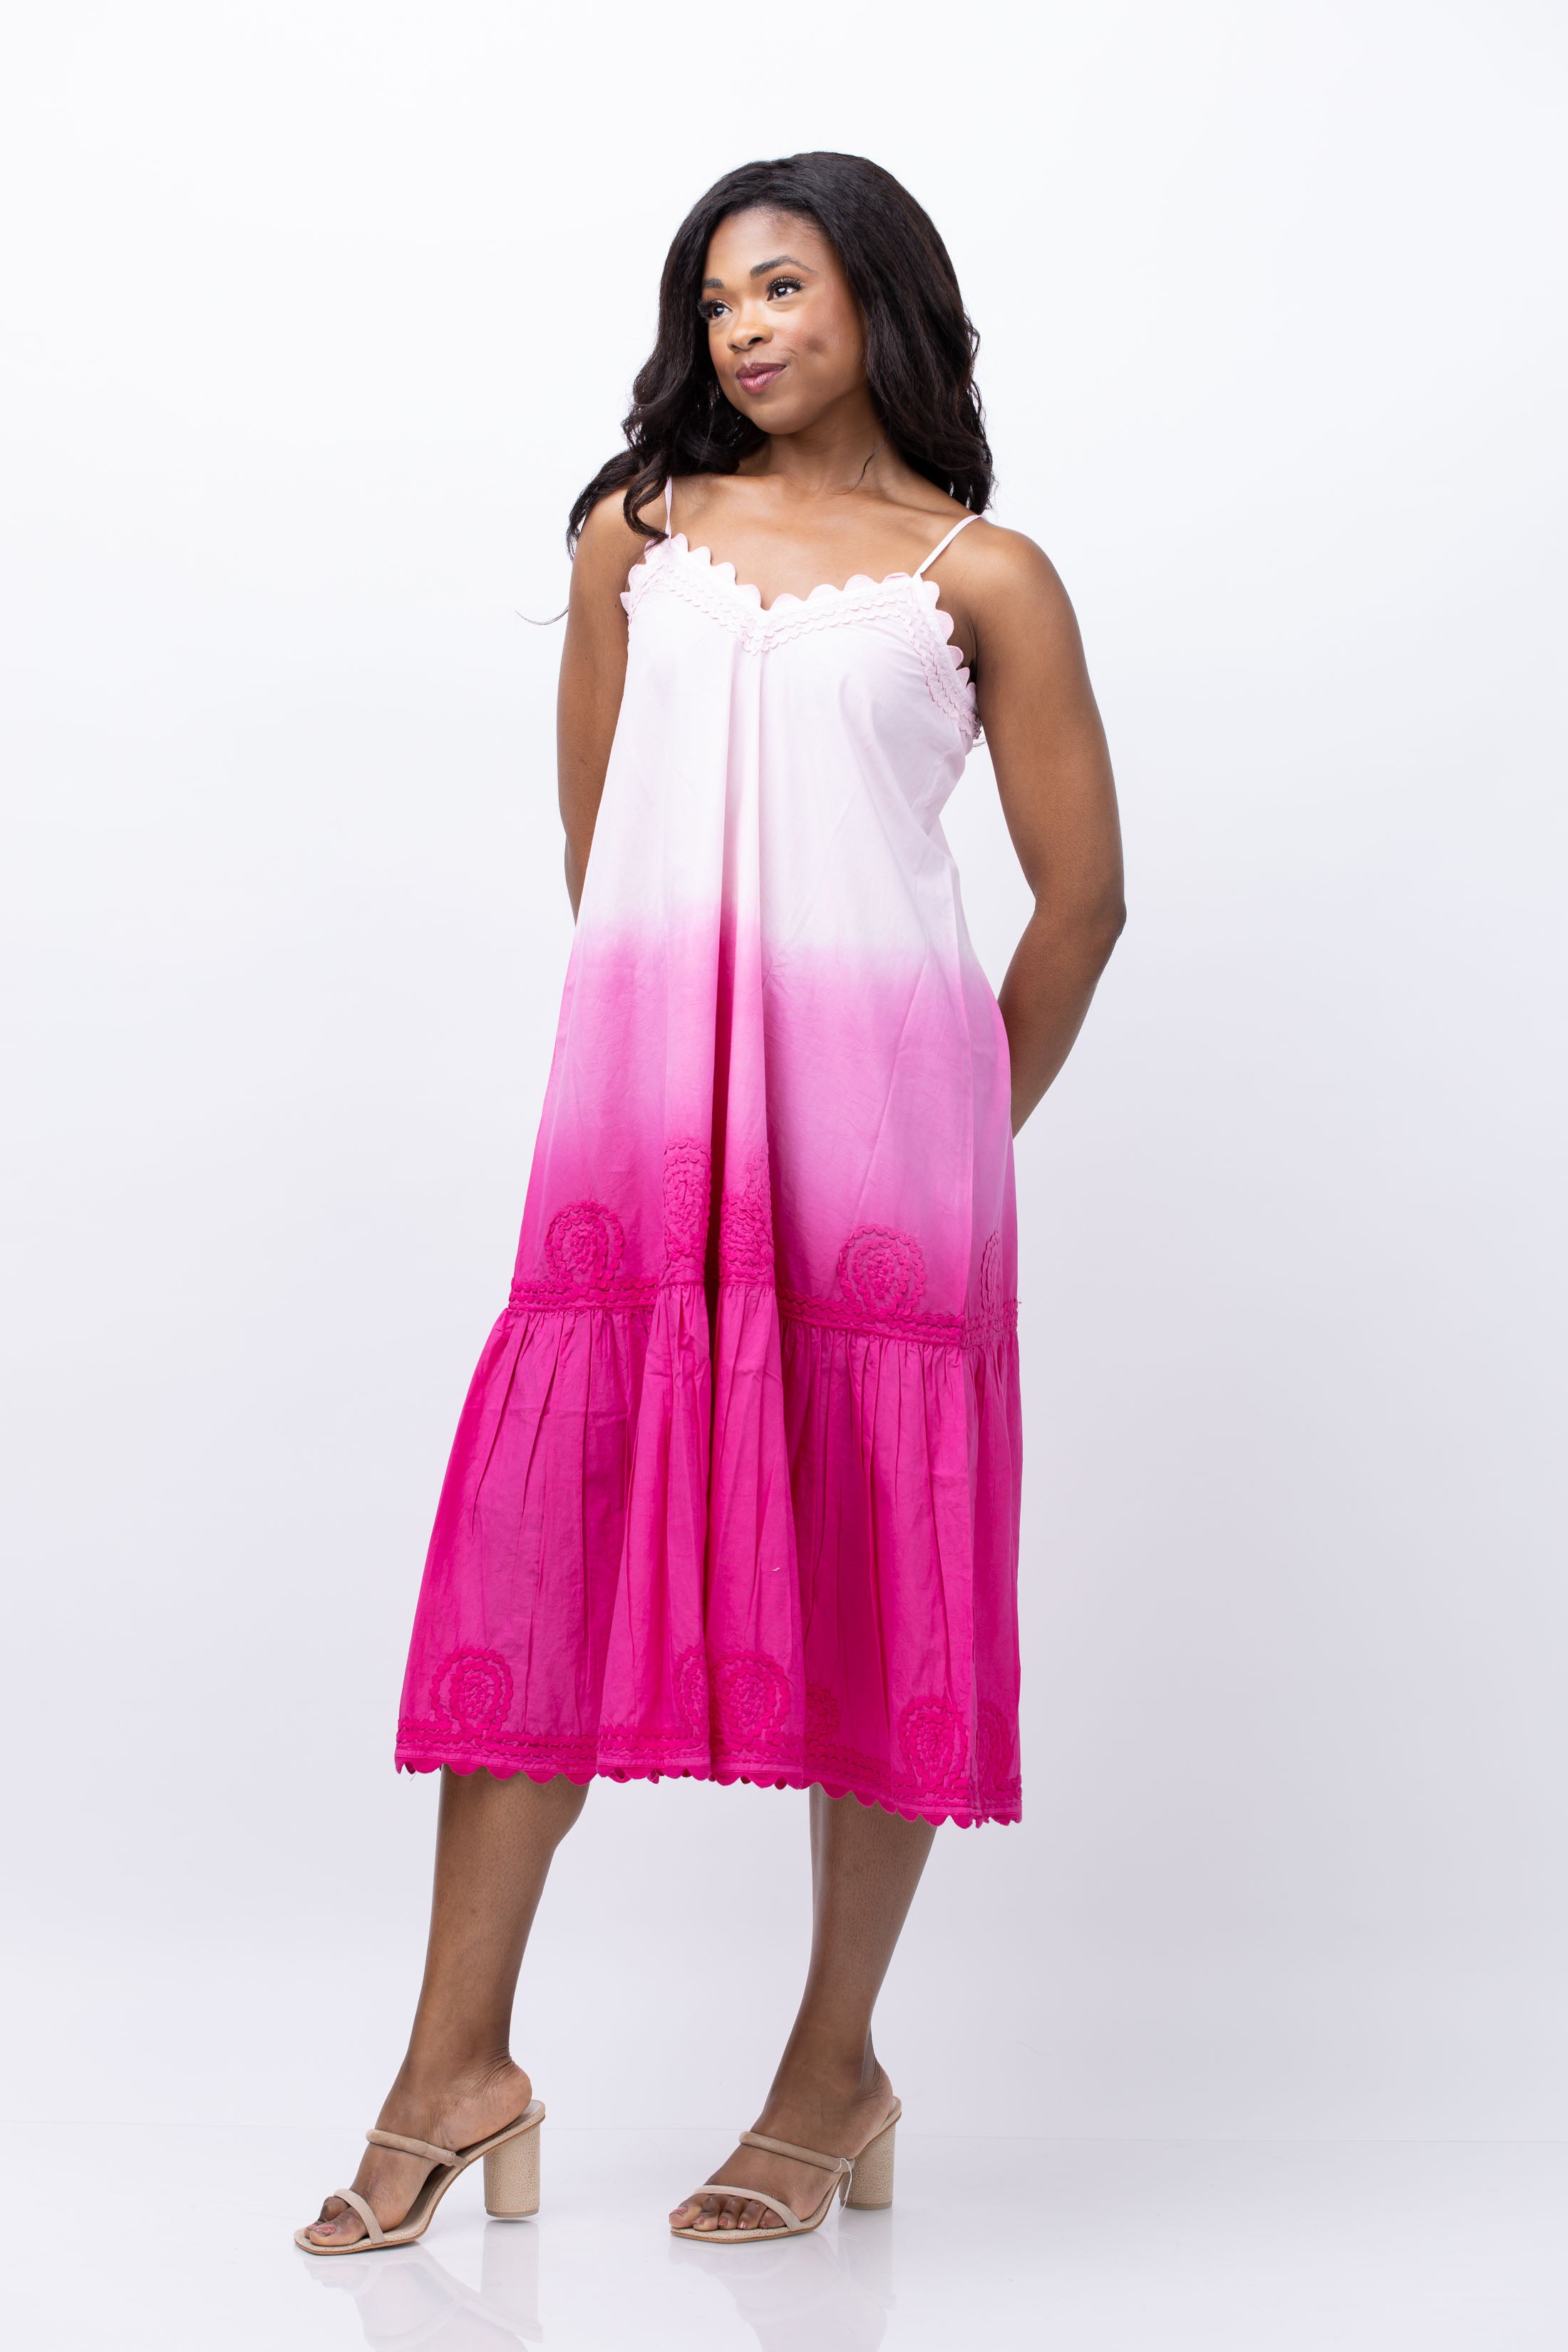 Juliet Dunn Ombre Dress in Pink